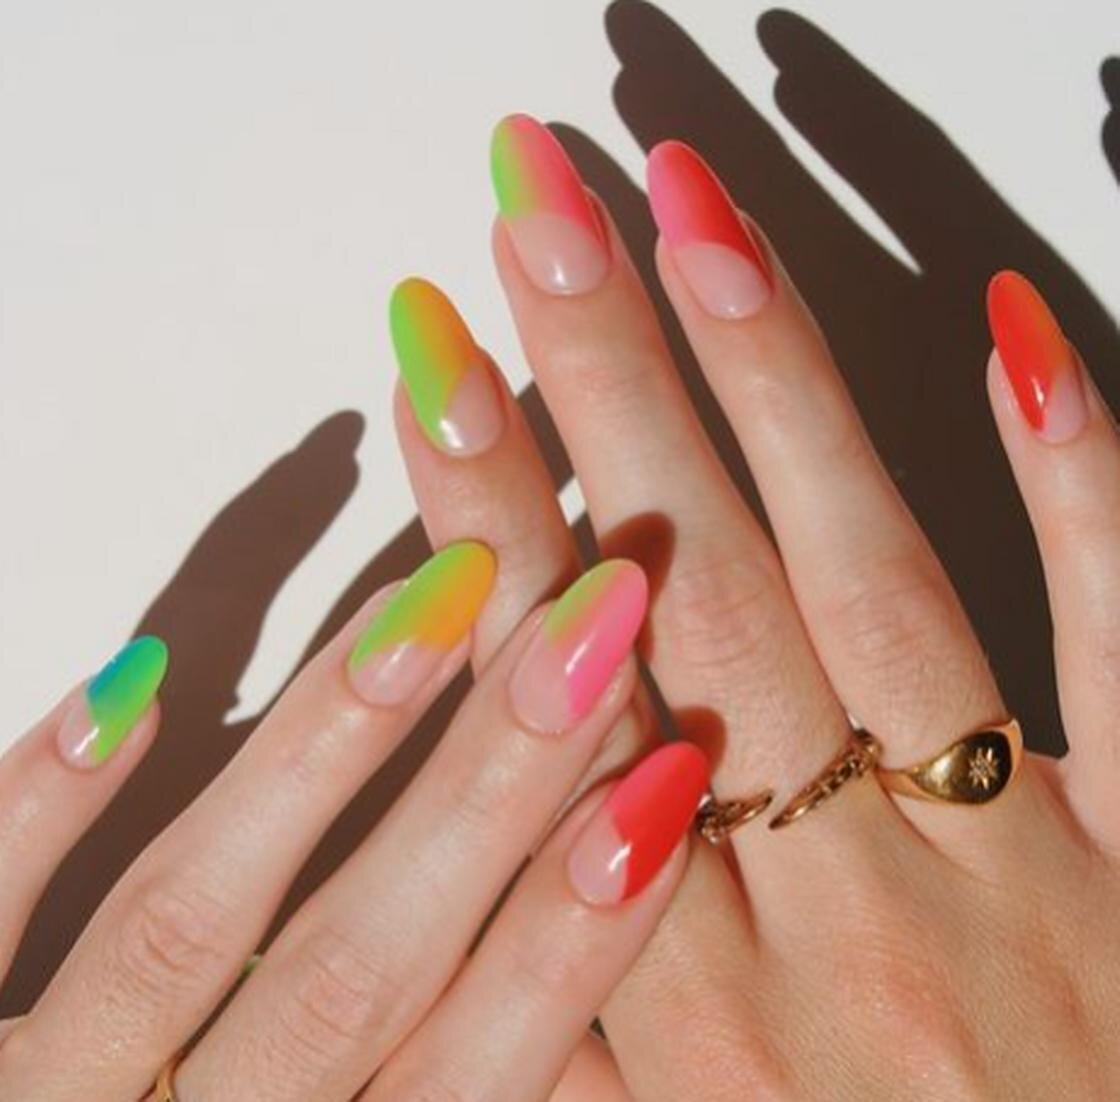    Длинные овальные ногти с красивым ярким маникюром, выполненным в технике омбре:Instagram.com/imarninails